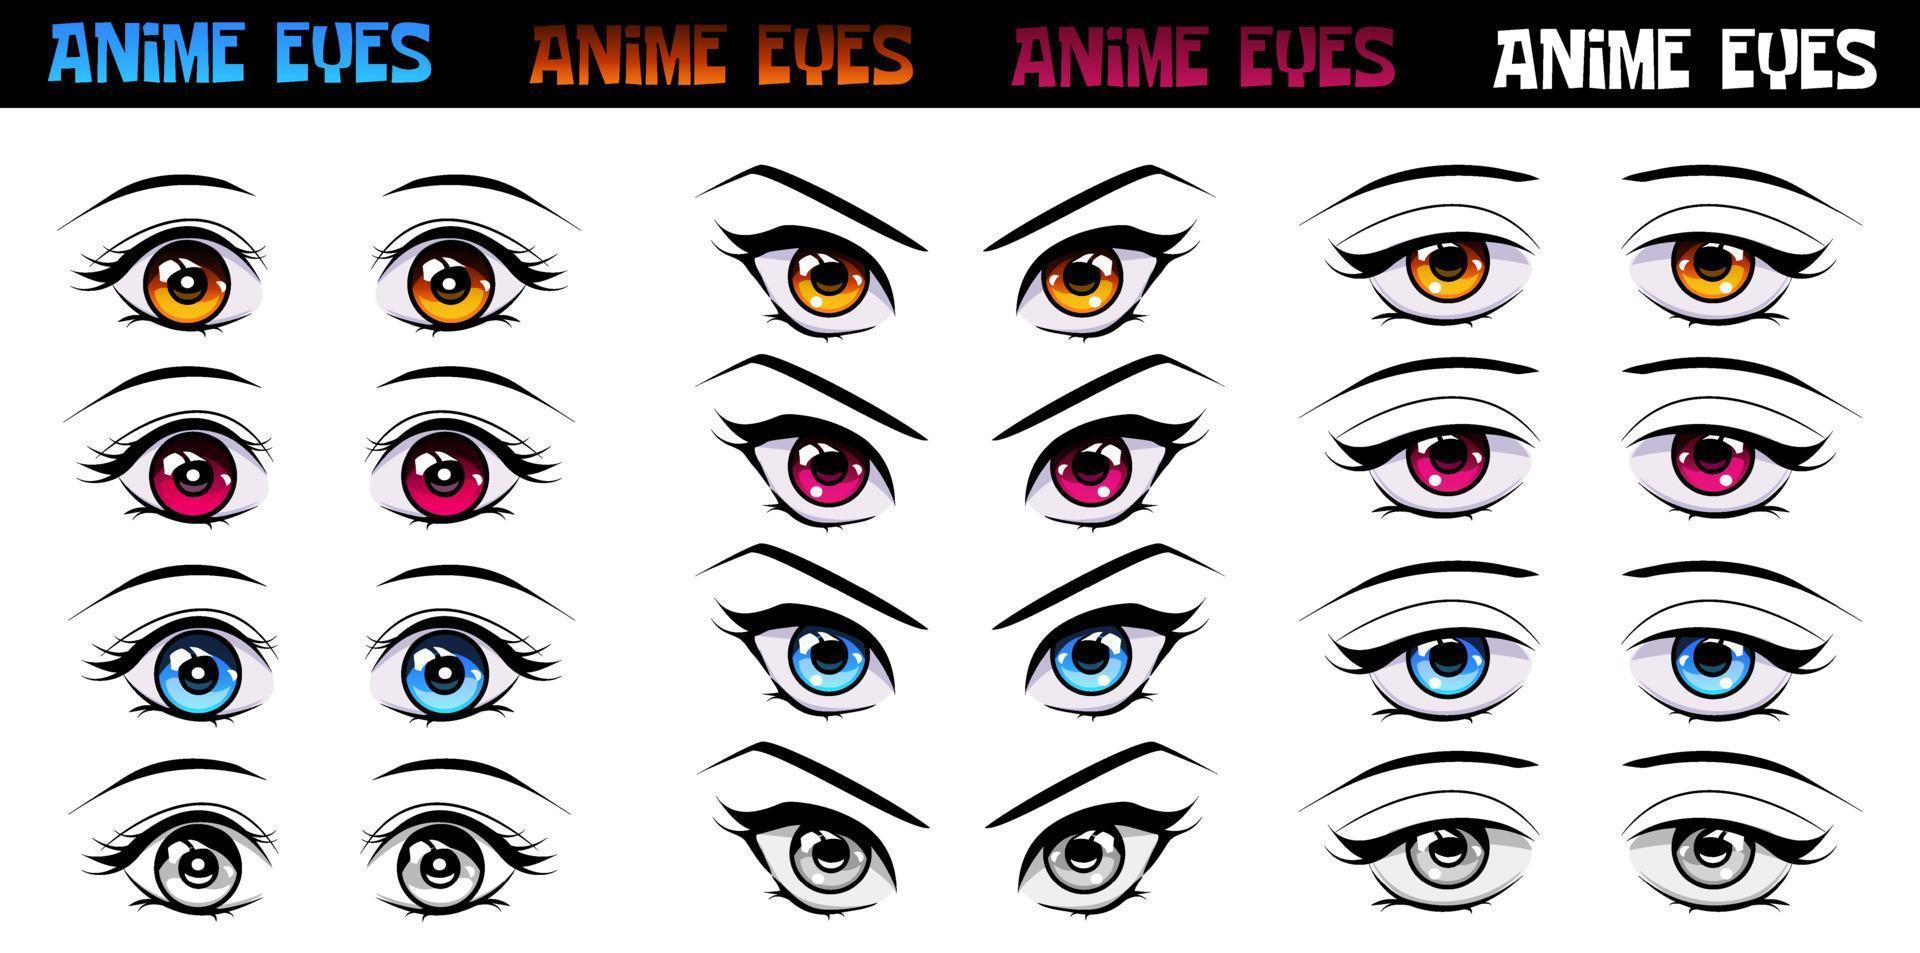 Page 19 | Anime Eyes Manga Images - Free Download on Freepik